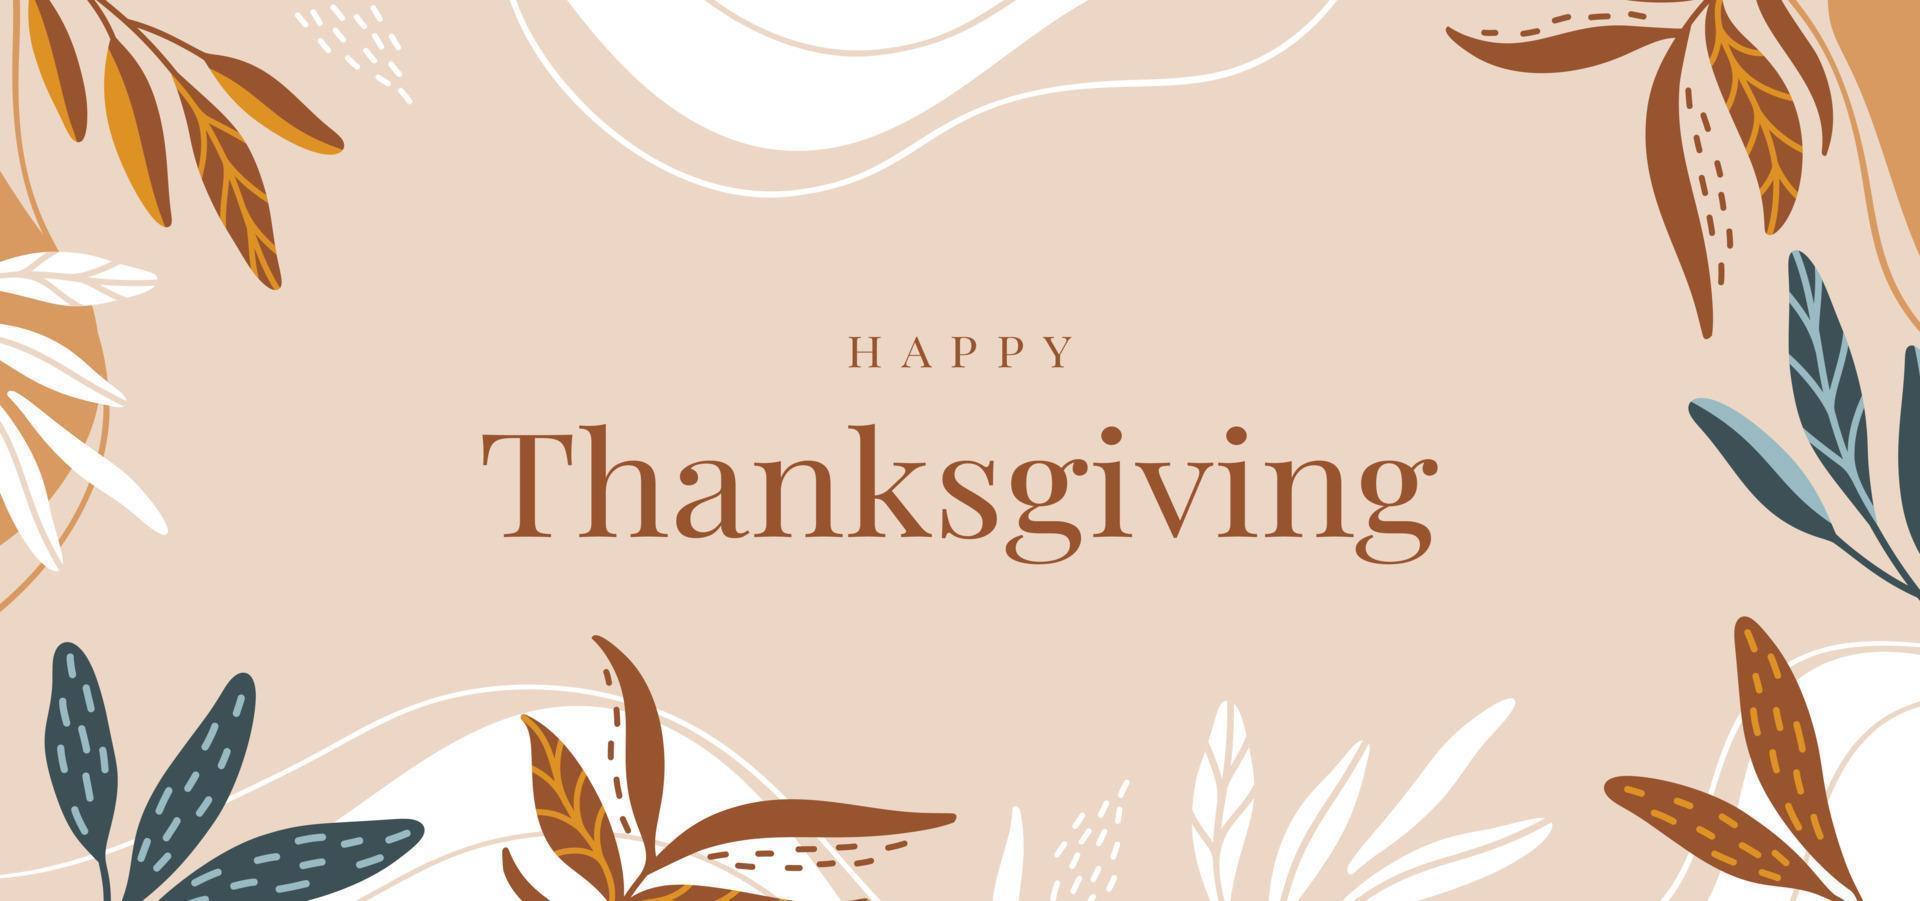 Hintergrund mit bunten Herbstblättern und Text Happy Thanksgiving vektor